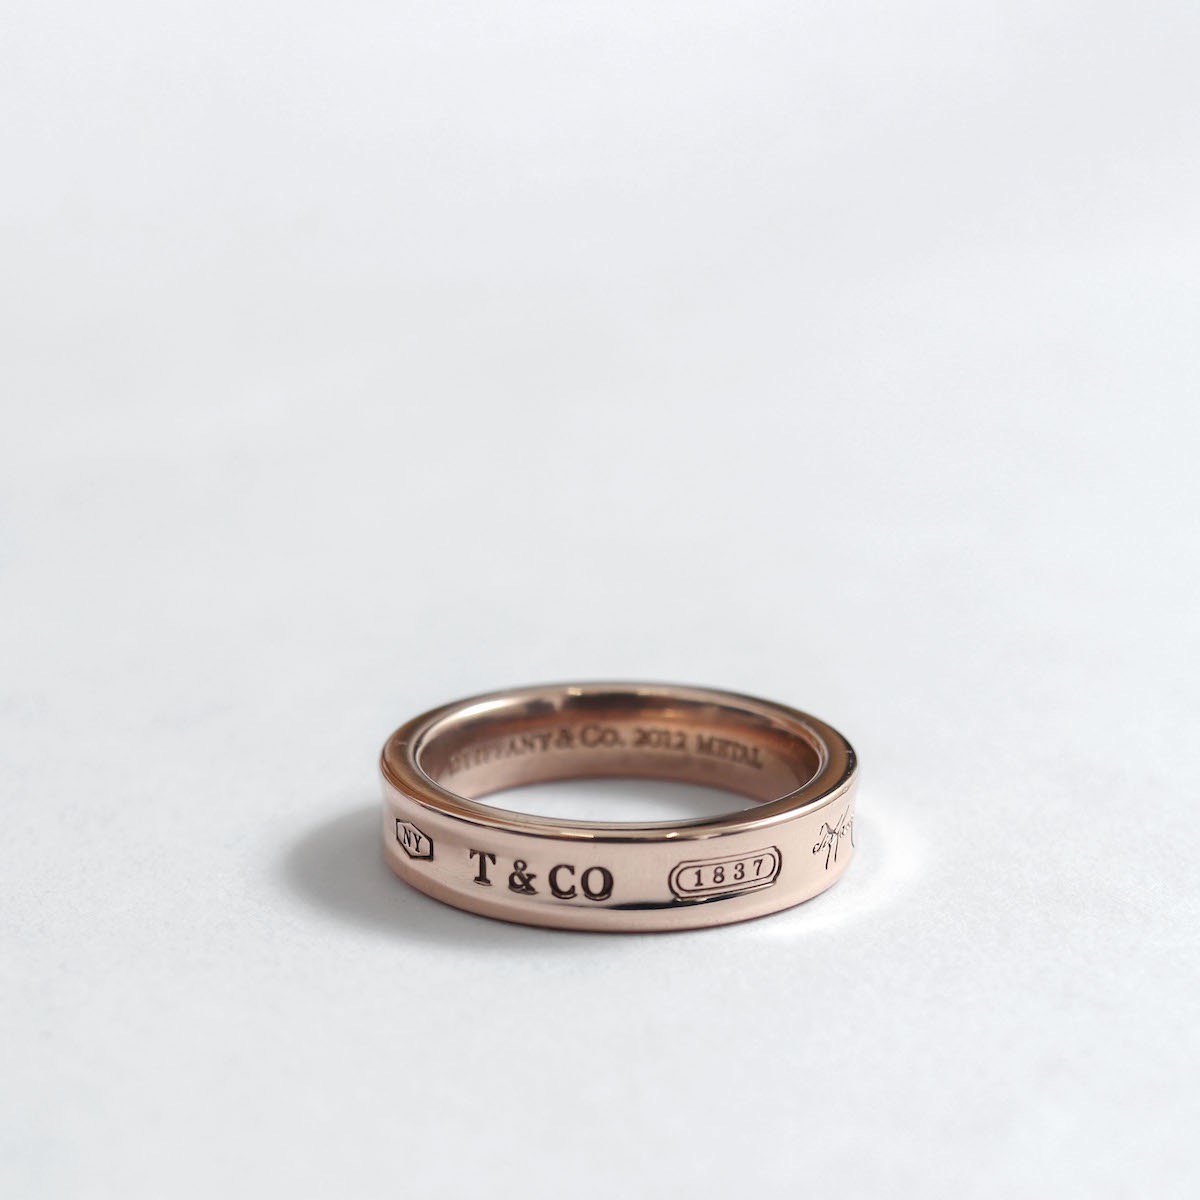 ティファニー リング 指輪 1837 ナロー ルベドメタル 11号 レディース TIFFANY&Co.  K30616340